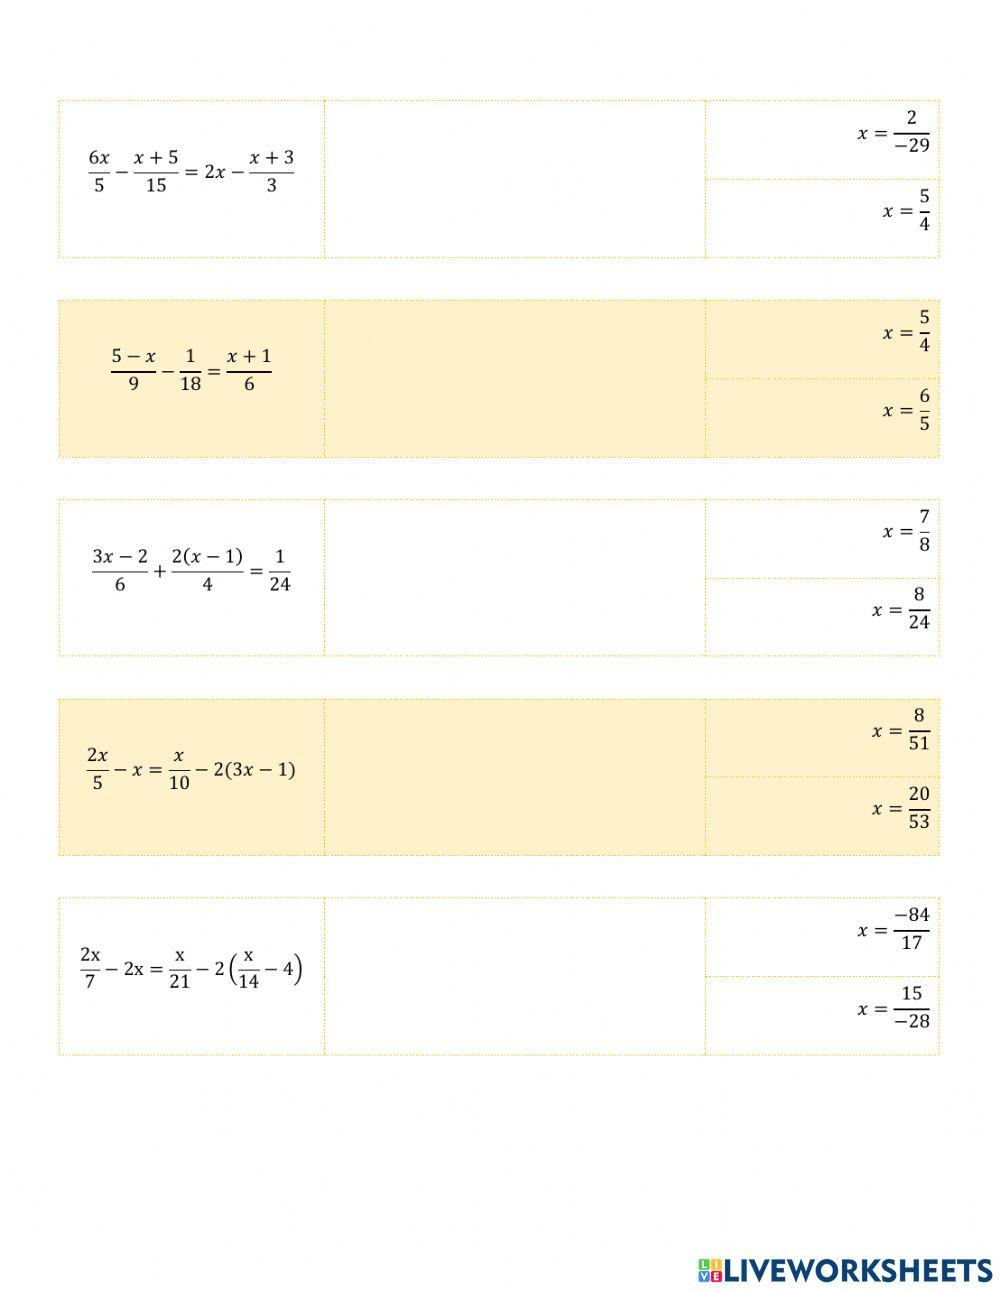 III.2.3. Ecuaciones lineales racionales dos o más denominadores